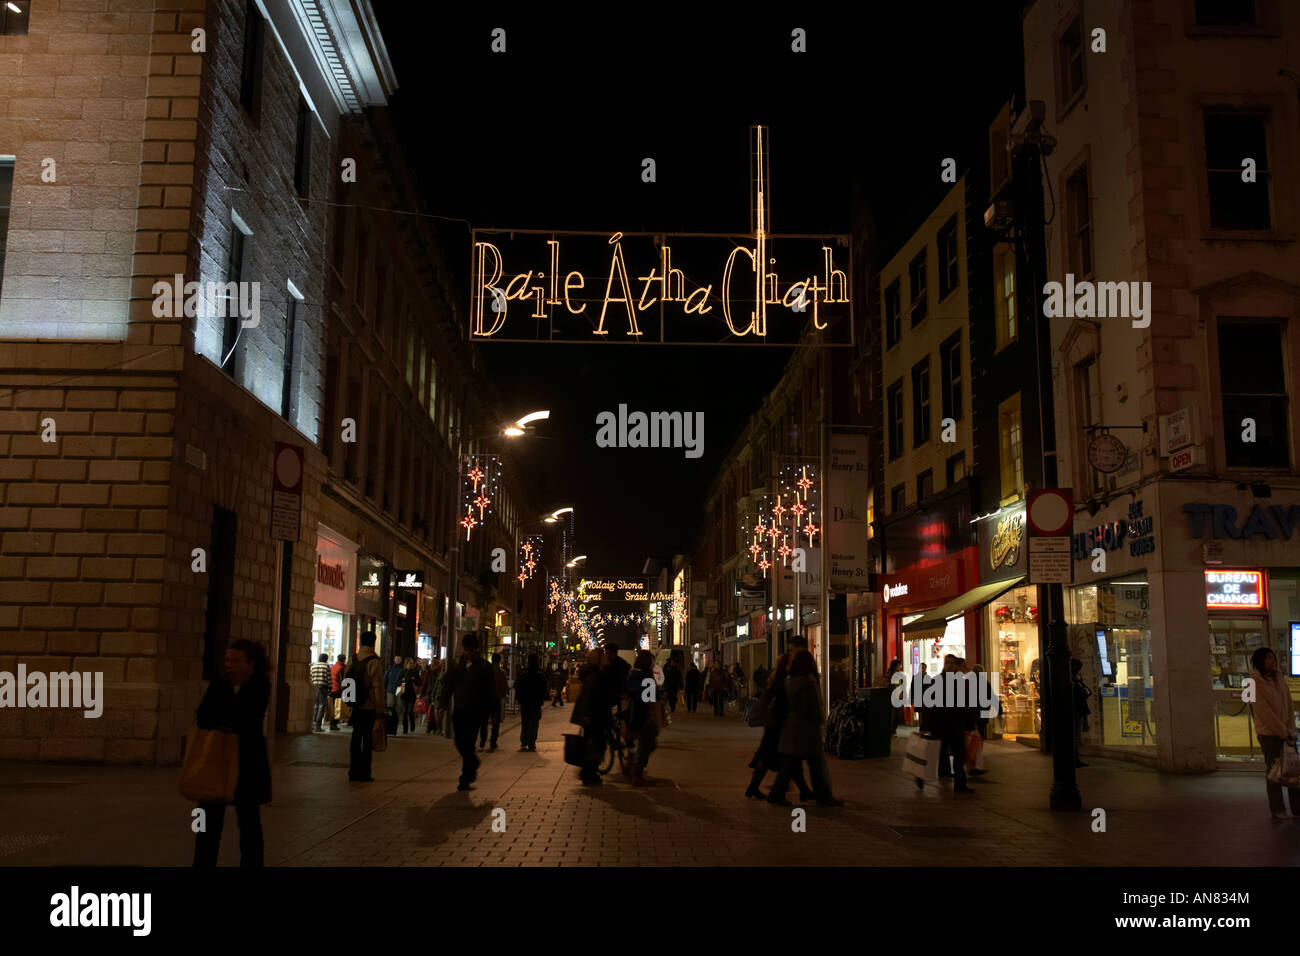 Notturno di baile atha cliath in gaelico illuminato segno e acquirenti di Henry Street pre natale a Dublino Repubblica di Irlanda Foto Stock